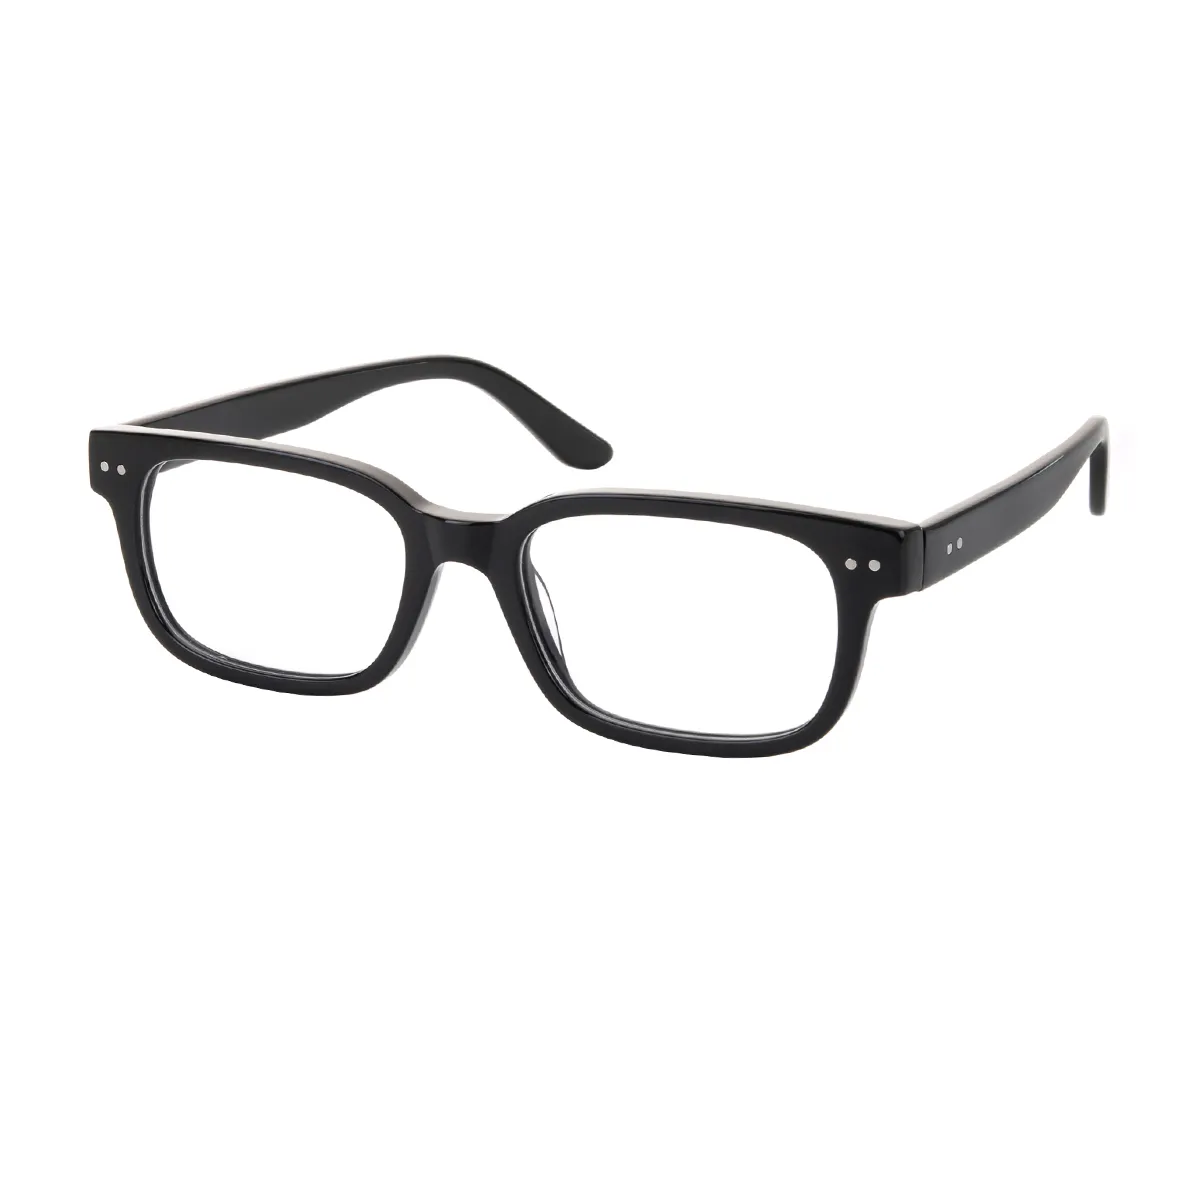 York - Rectangle Black Glasses for Men & Women